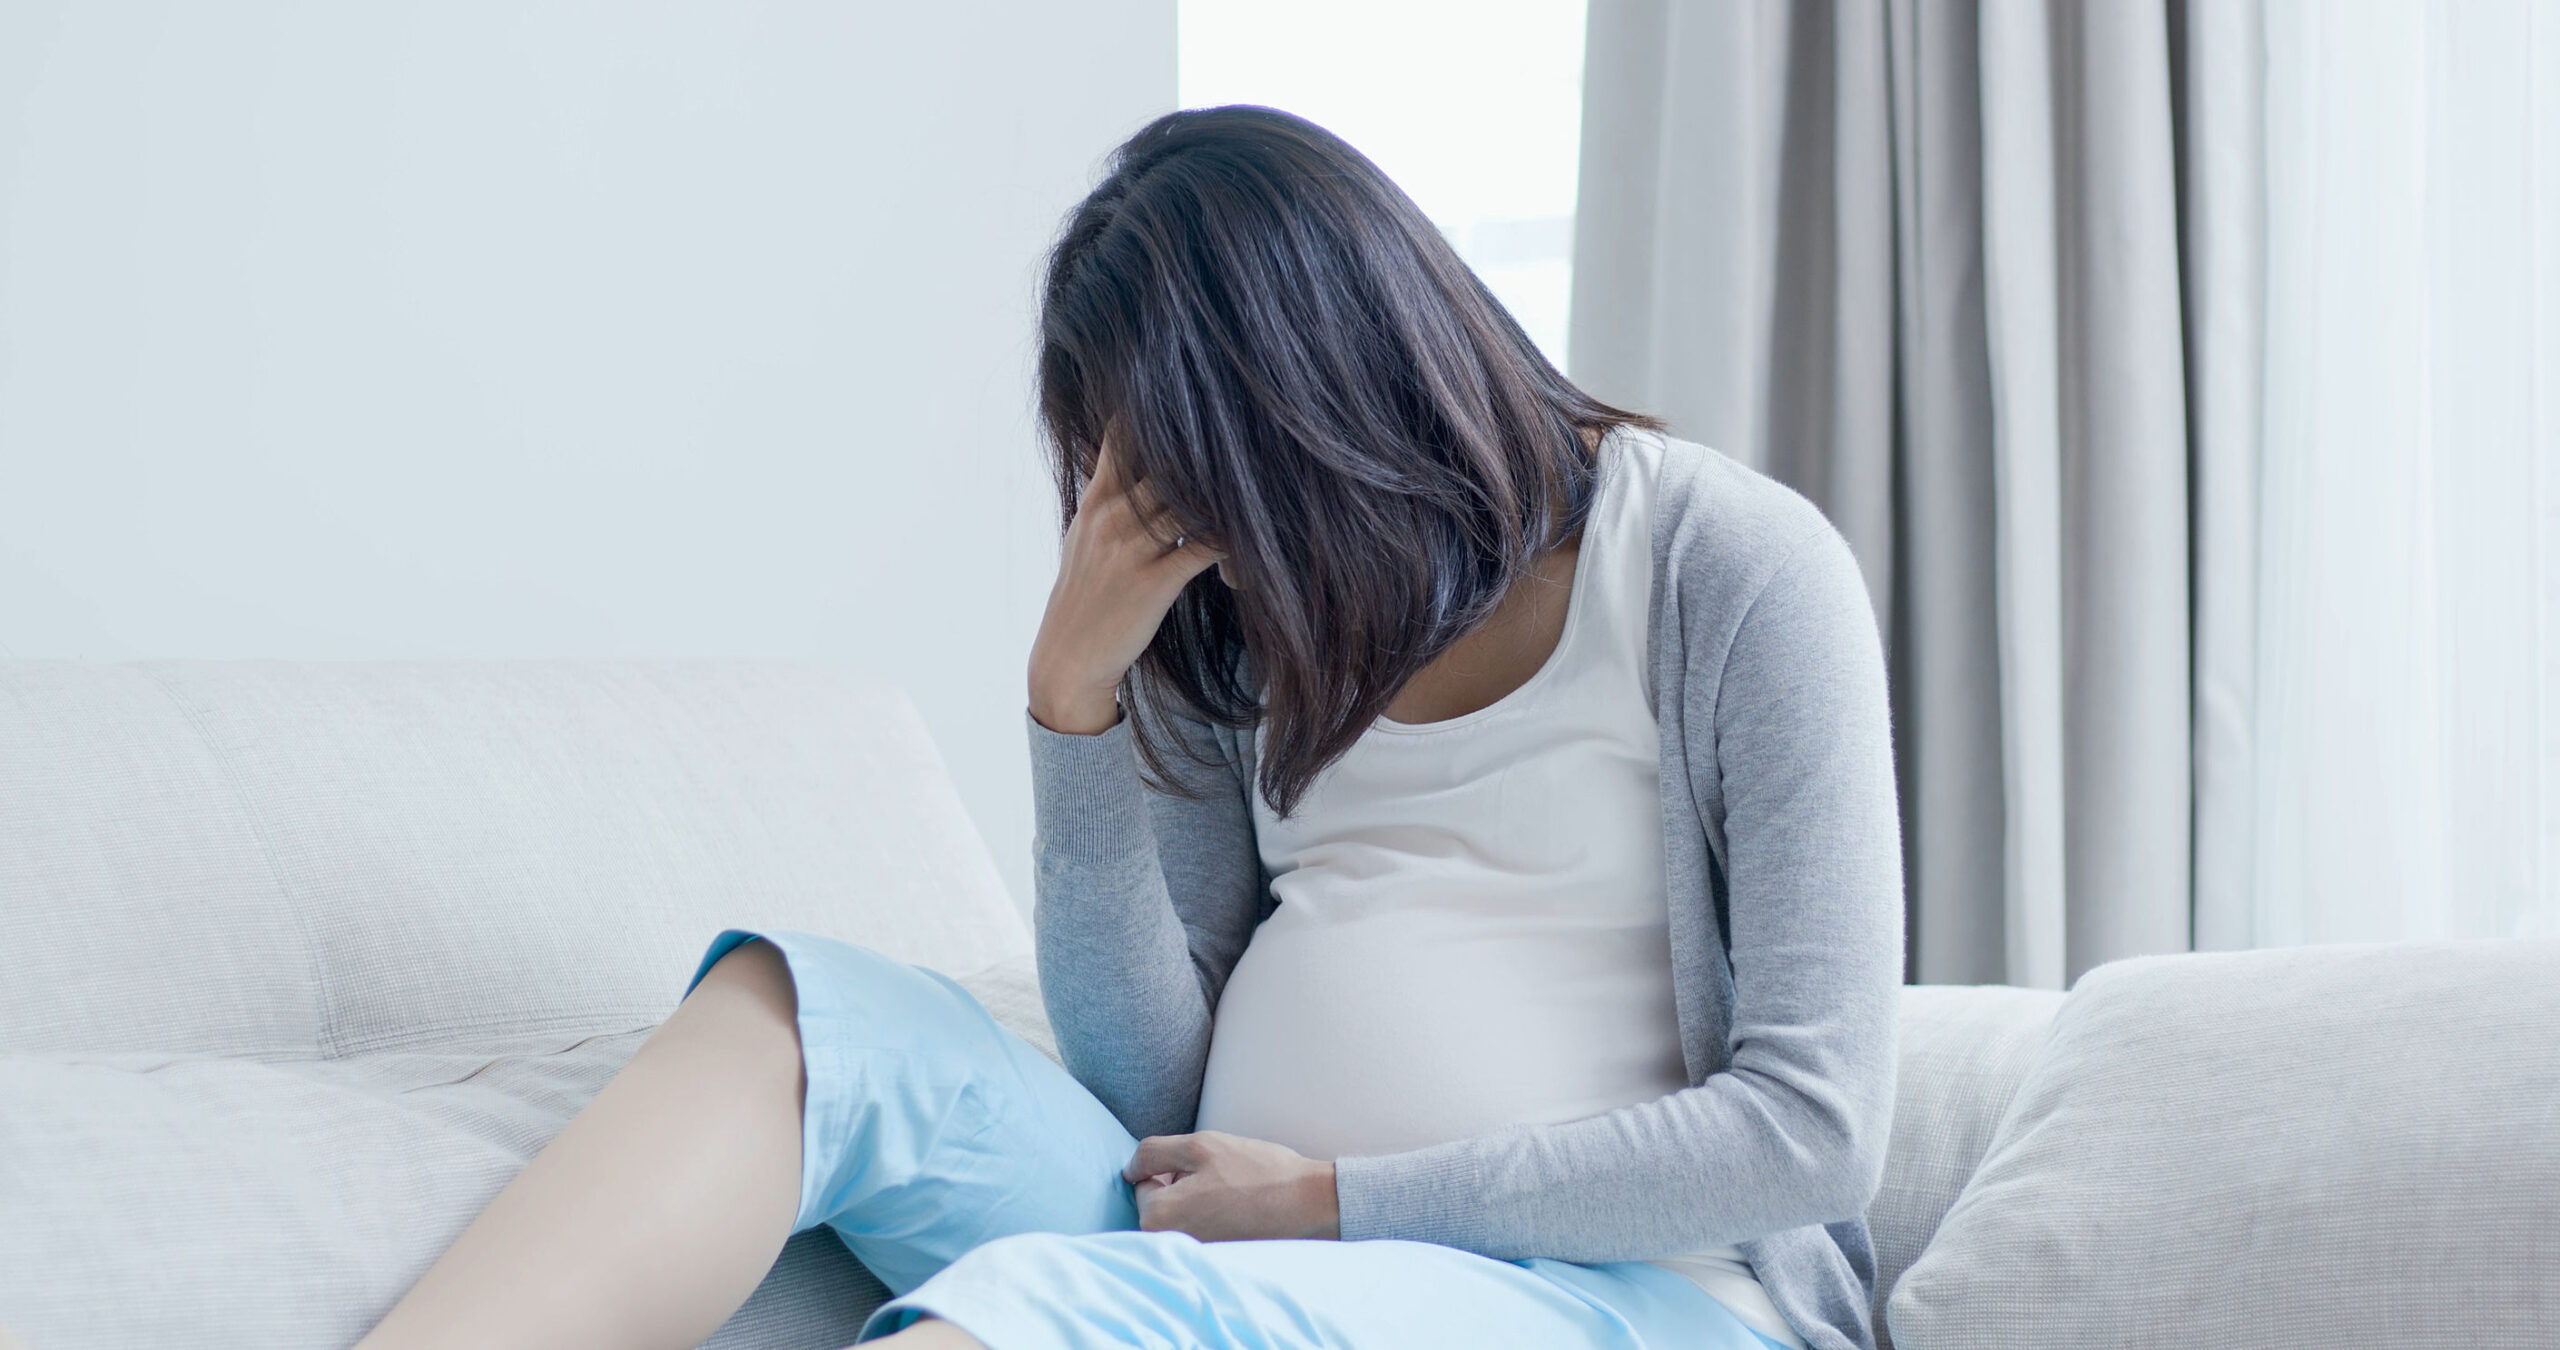 Tiền sản giật ảnh hưởng đến sức khỏe và sinh sản của mẹ và con trong thời kỳ thai nghén. Để hiểu rõ hơn về các nguy cơ và hậu quả của tiền sản giật, bạn có thể xem hình ảnh liên quan để được tư vấn và hướng dẫn điều trị.